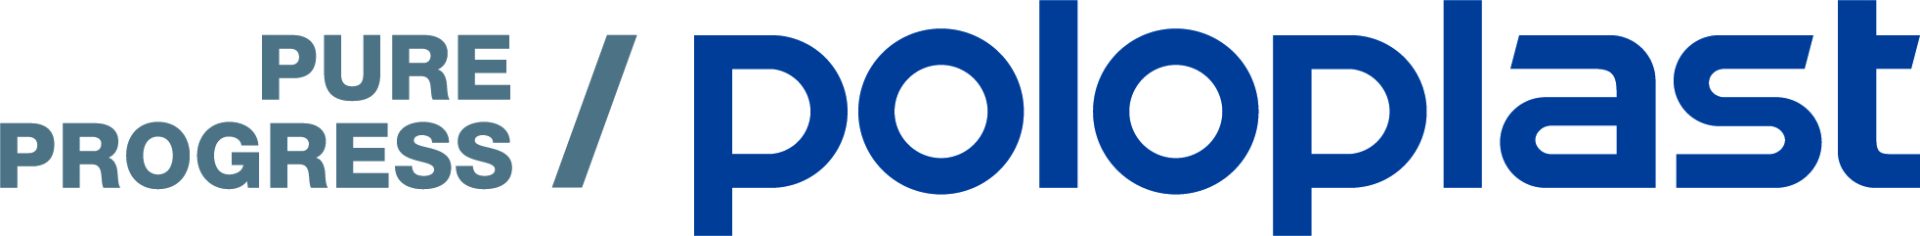 Poloplast Logo